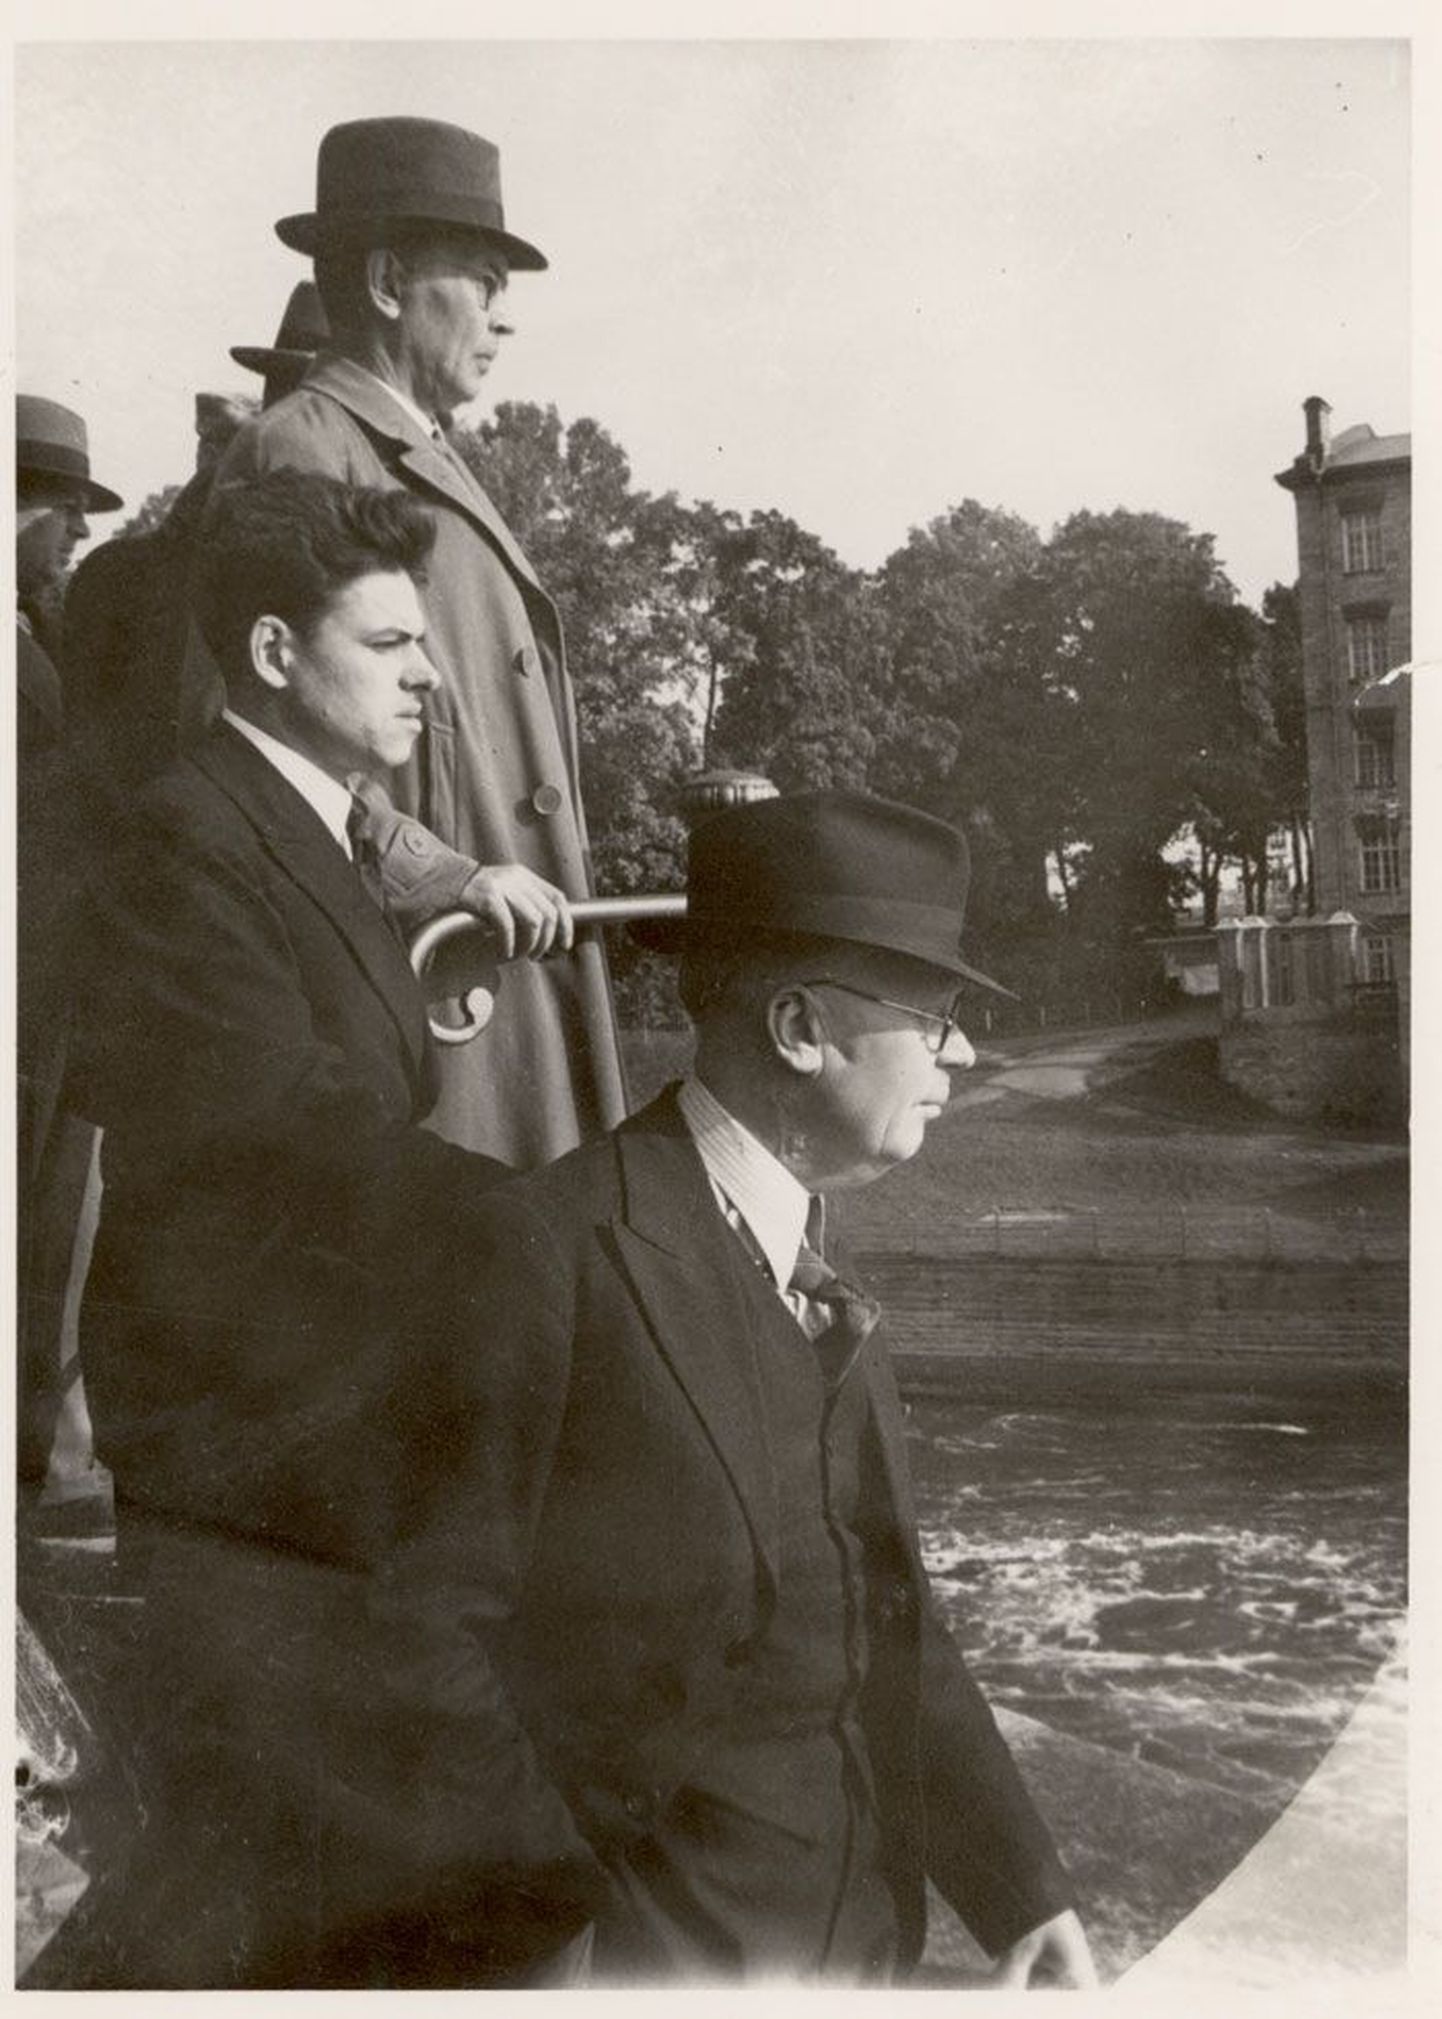 Kirjanikud ekskursioonil mööda Eestit 1938. aastal. Paremalt: Eduard Hubel (alias Mait Metsanurk), Aadu Hint ja Friedebert Tuglas